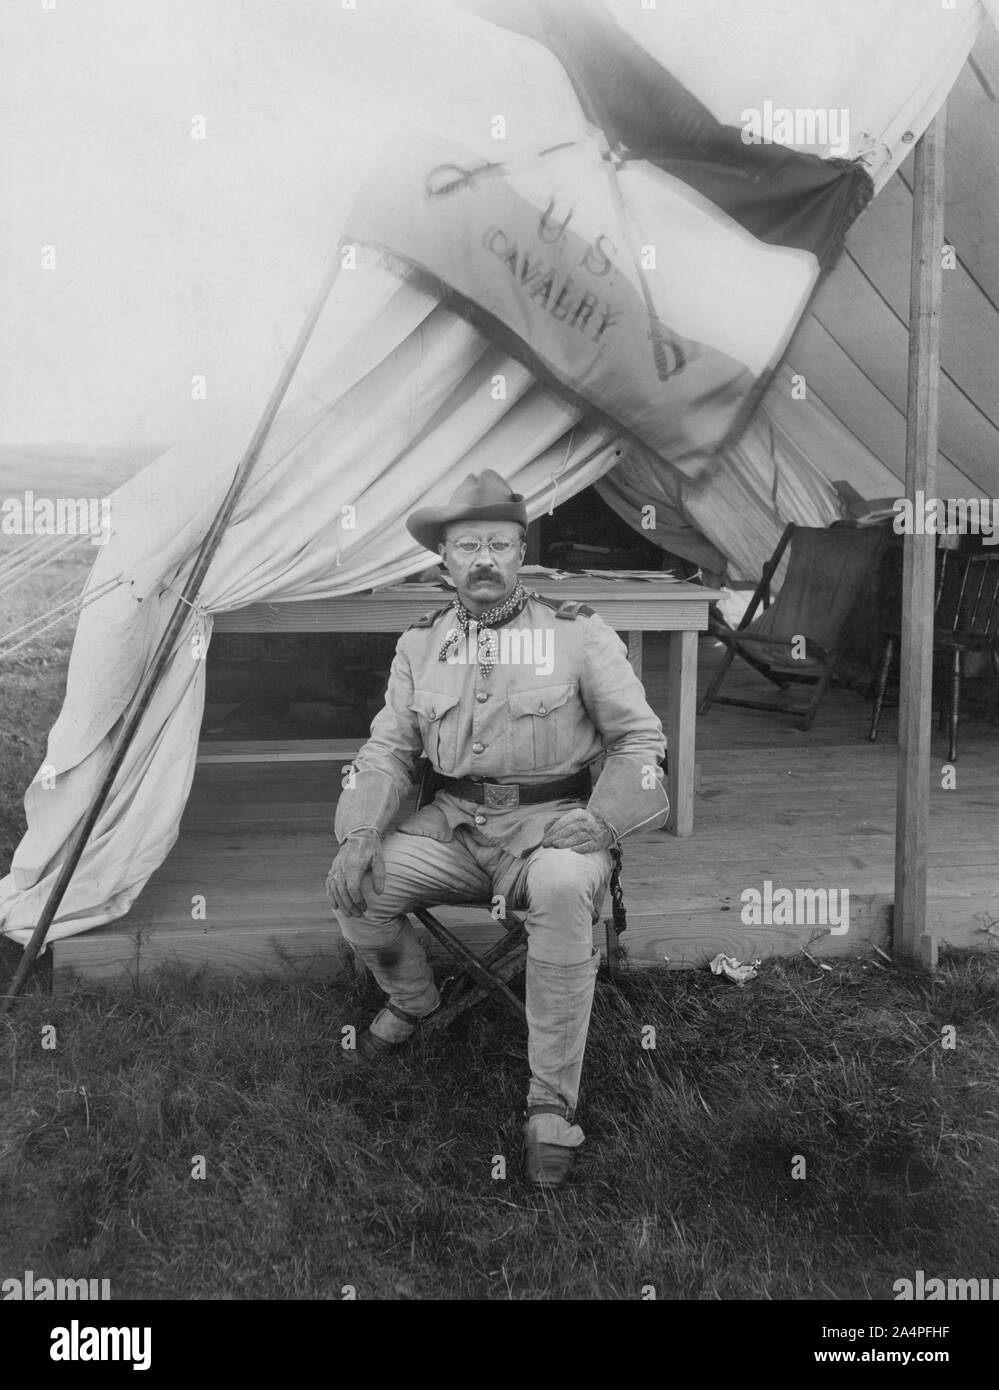 Le Colonel Theodore Roosevelt, Un portrait assis en uniforme militaire, Montauk, New York, USA, photo de Siegel-Cooper Co., Septembre 1898 Banque D'Images